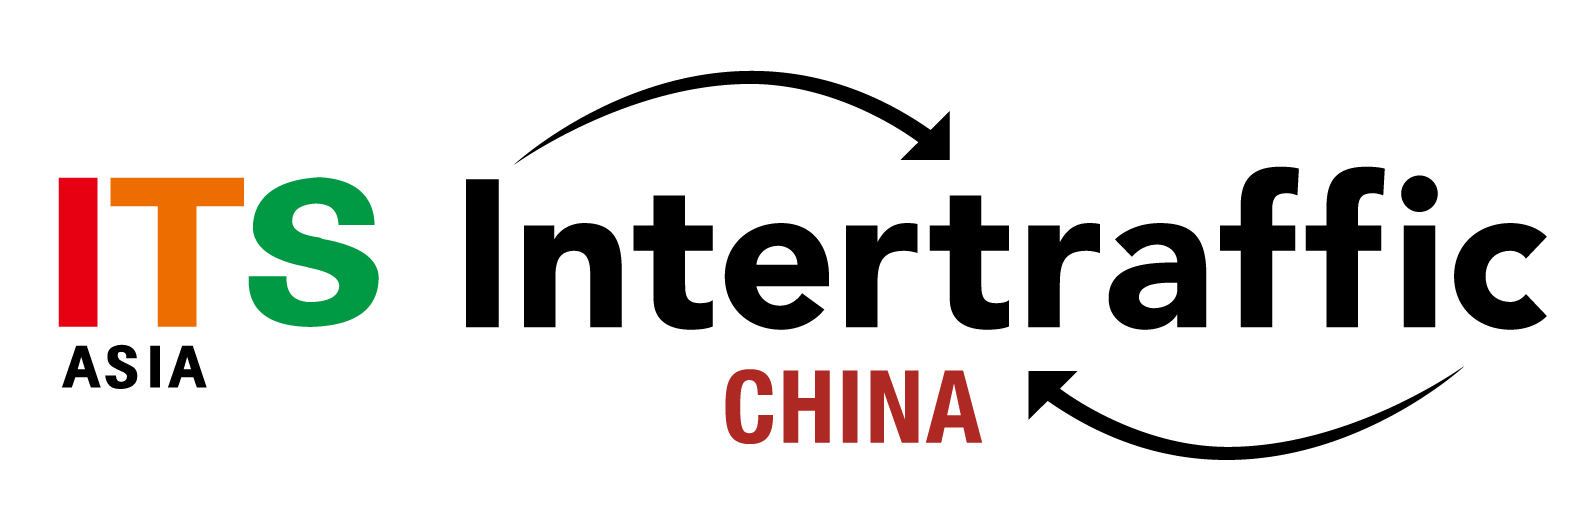 2019上海国际交通设施展会Intertrafic China